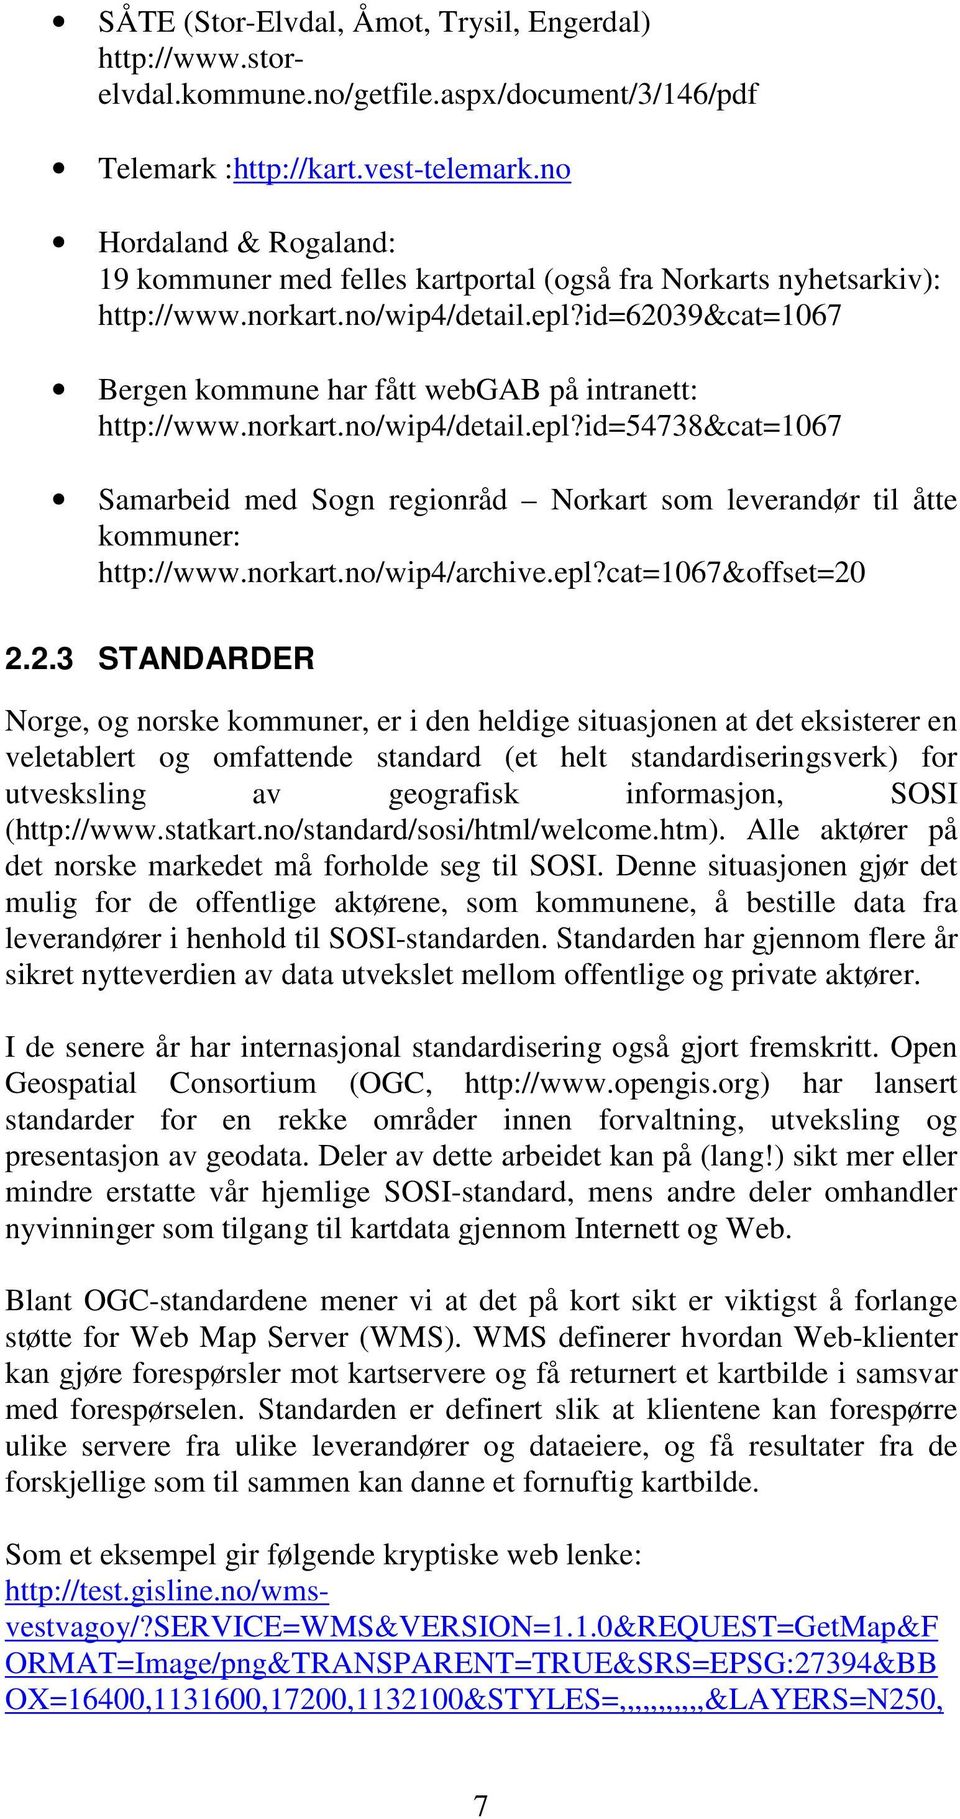 id=62039&cat=1067 Bergen kommune har fått webgab på intranett: http://www.norkart.no/wip4/detail.epl?